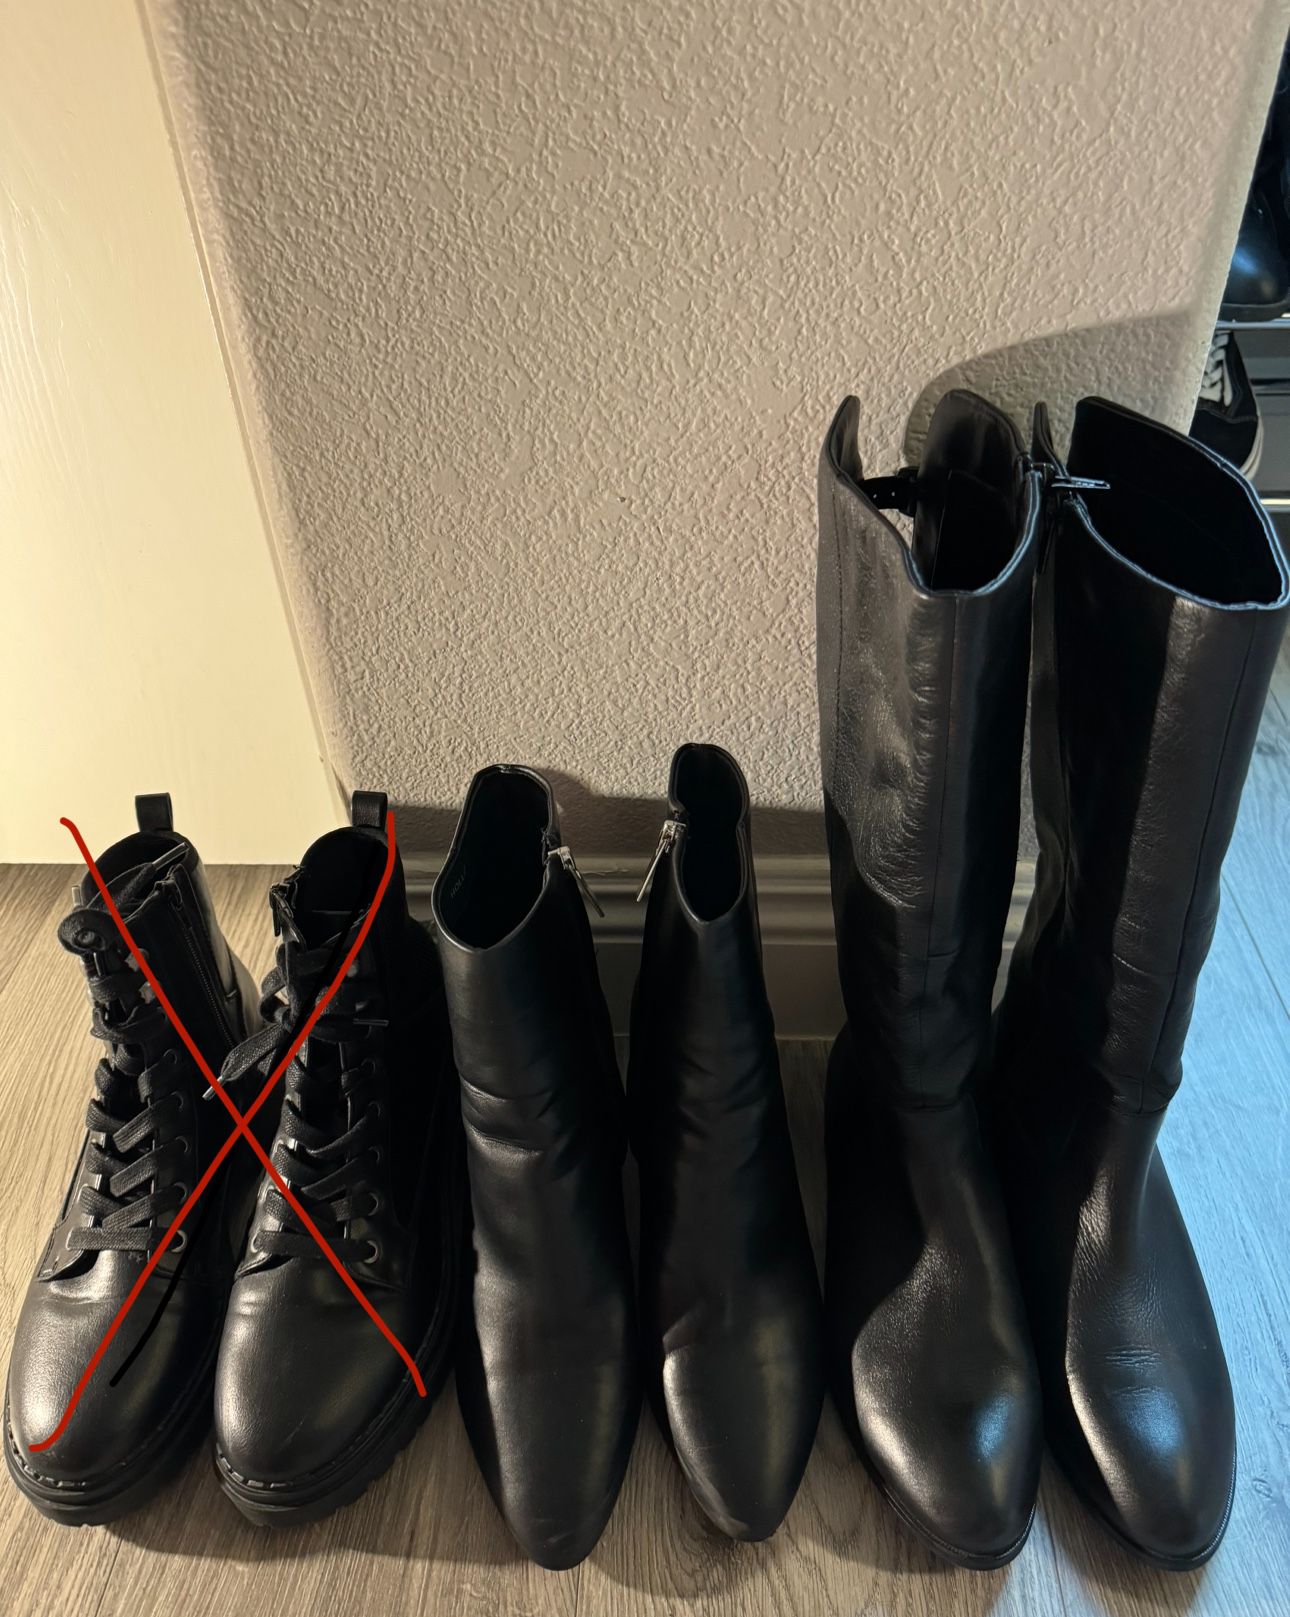 Women’s boots 8.5& 9